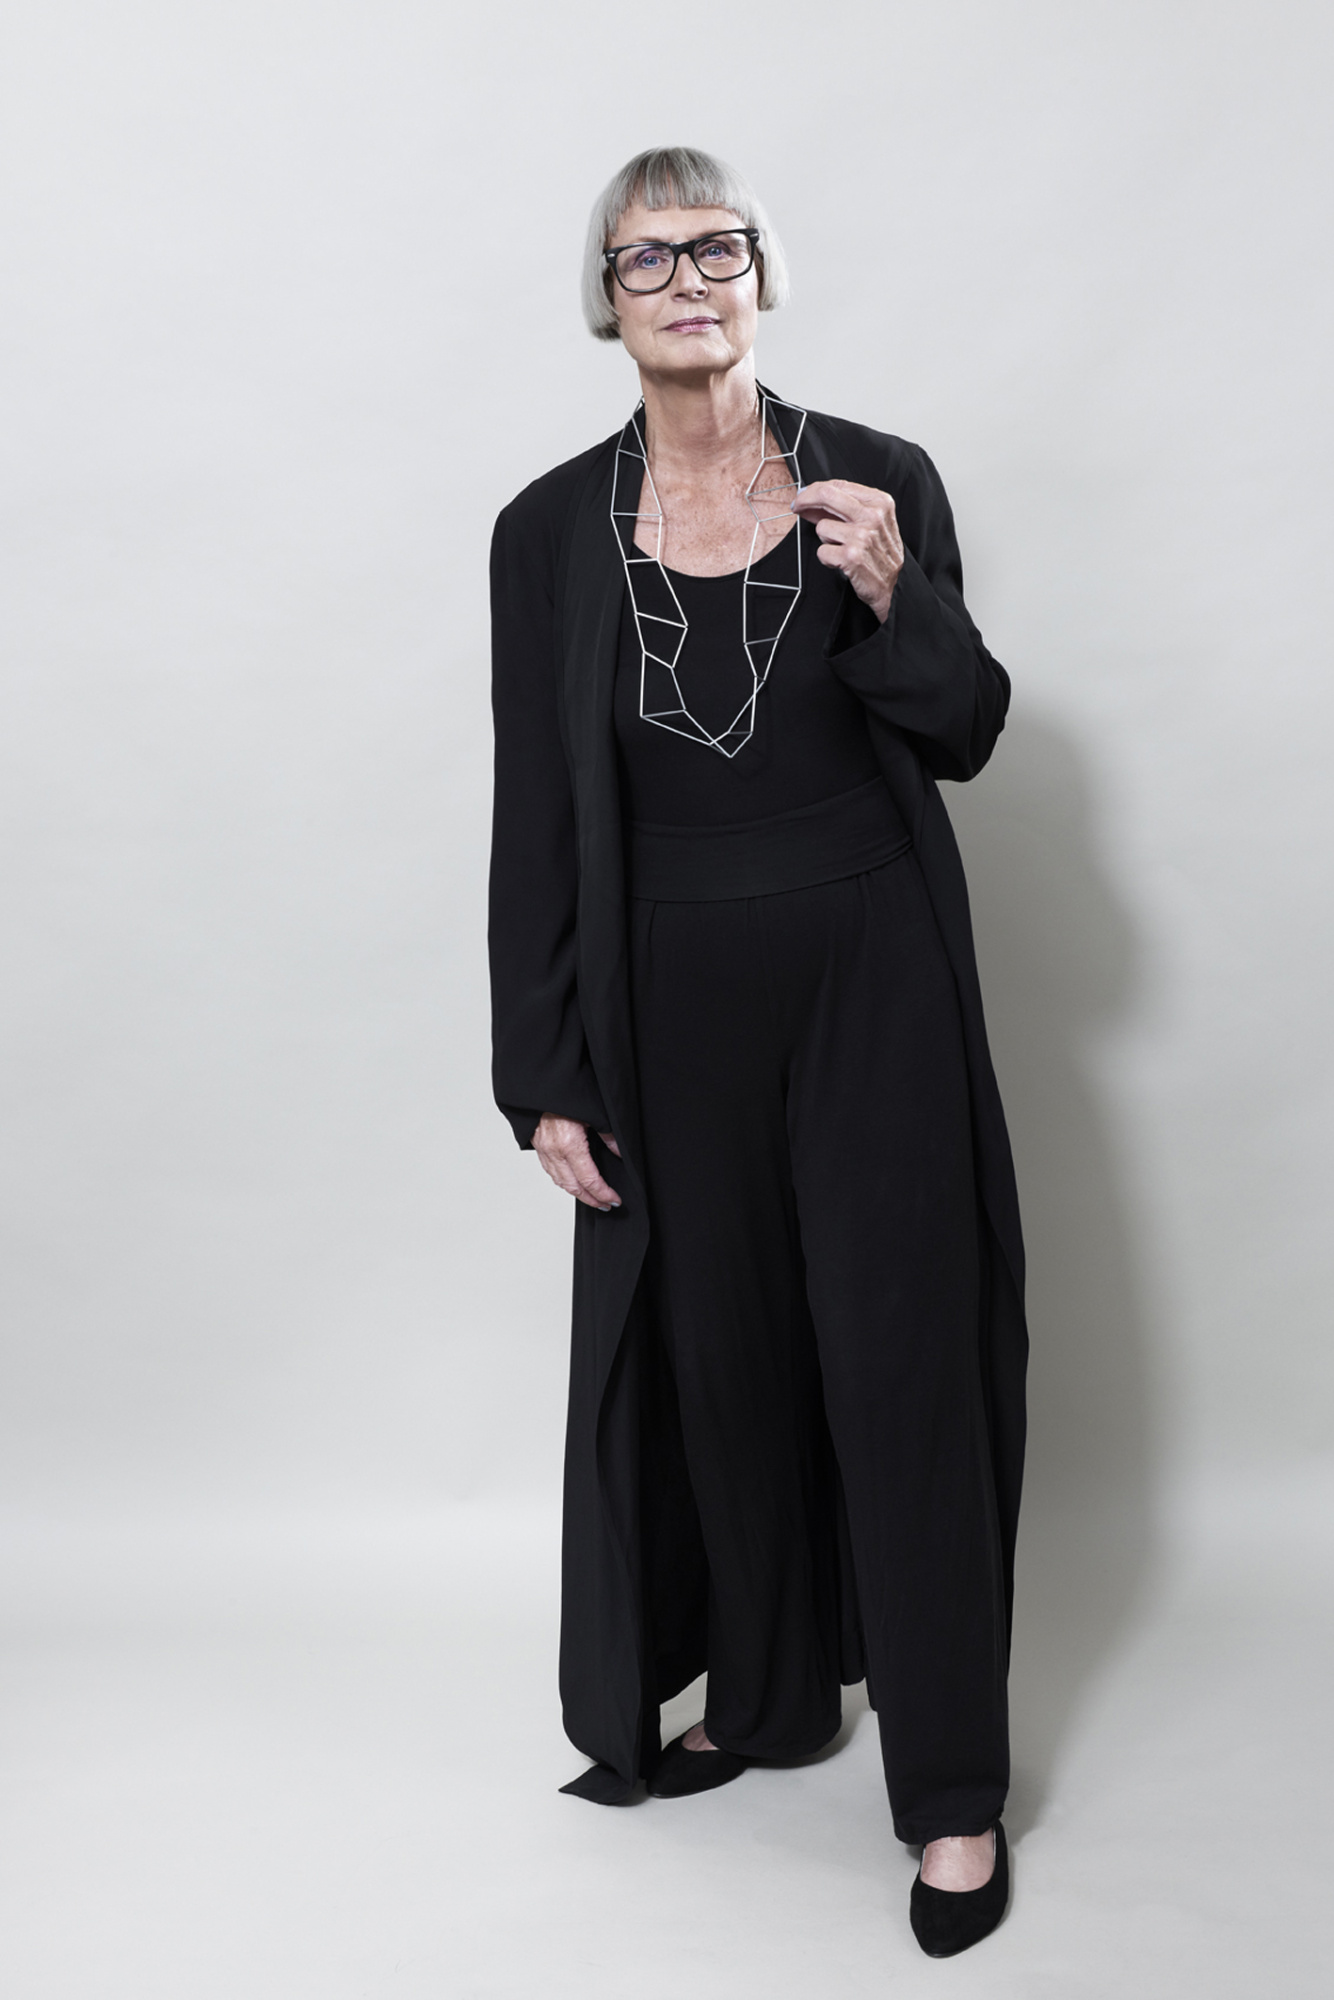 Frau mit lässig elegantem Look in schwarz, trägt einen Halsschmuck, welcher an eine unregelmäßige Leiter erinnert. Entgegen des ersten Eindrucks, scheint die Kette sehr flexibel.